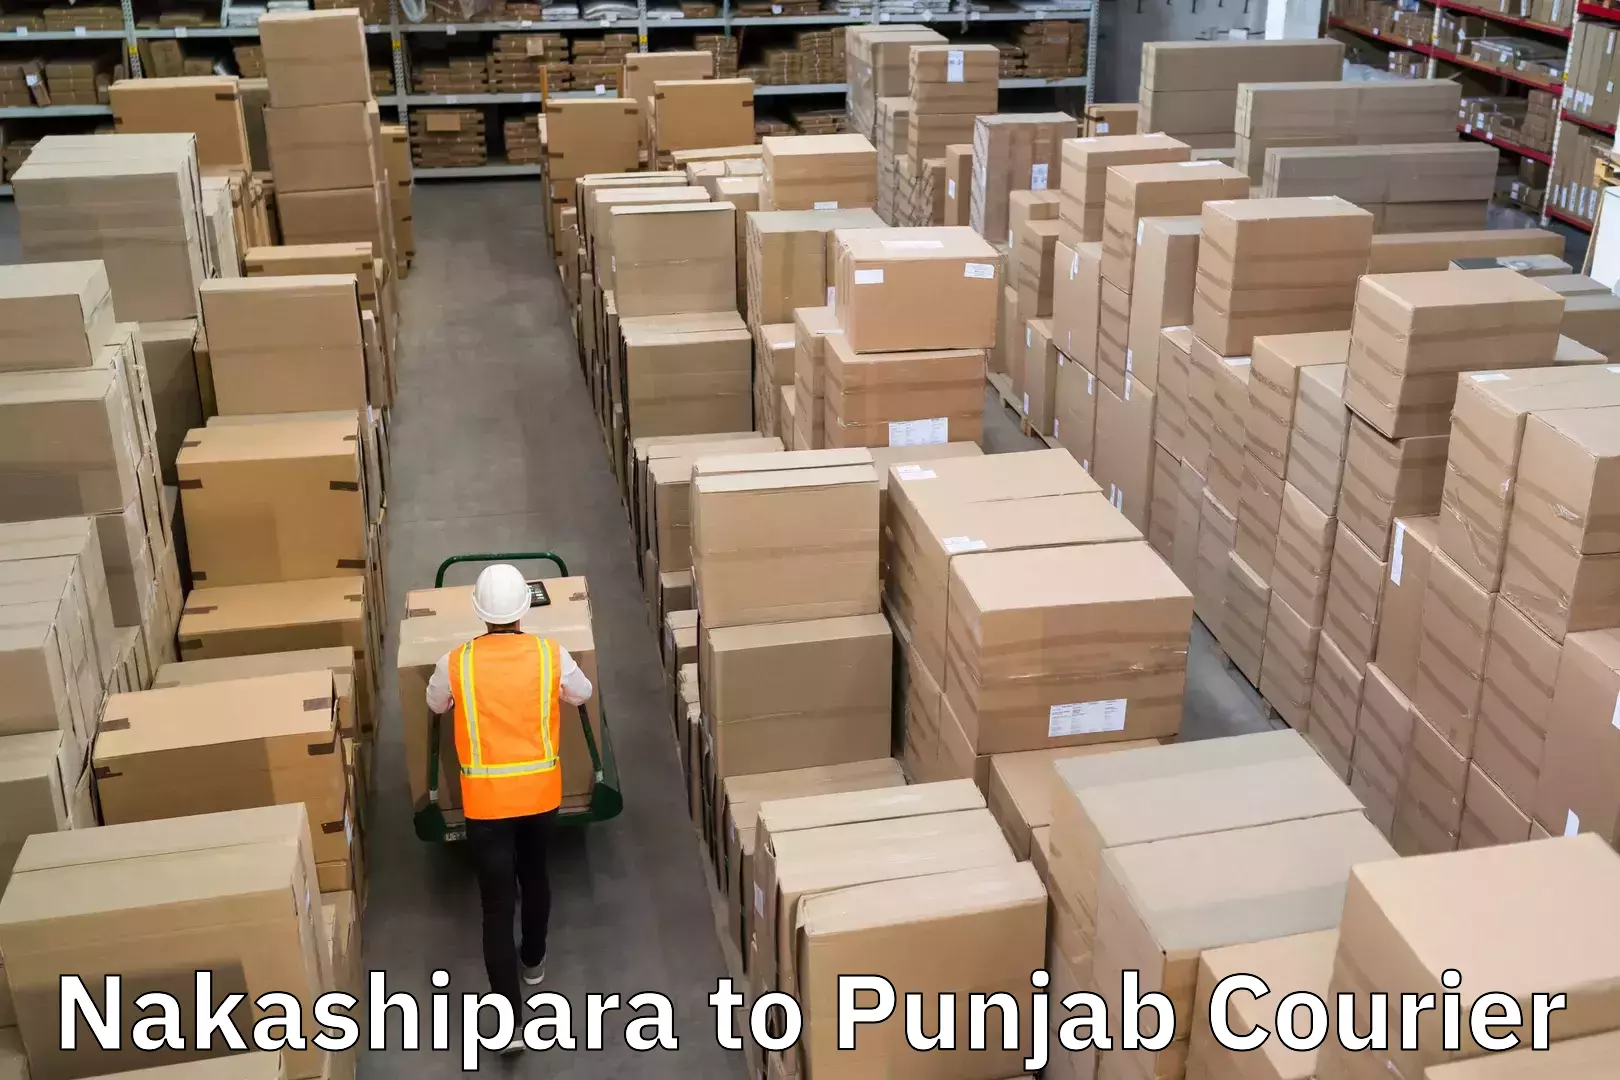 Efficient shipping operations Nakashipara to Punjab